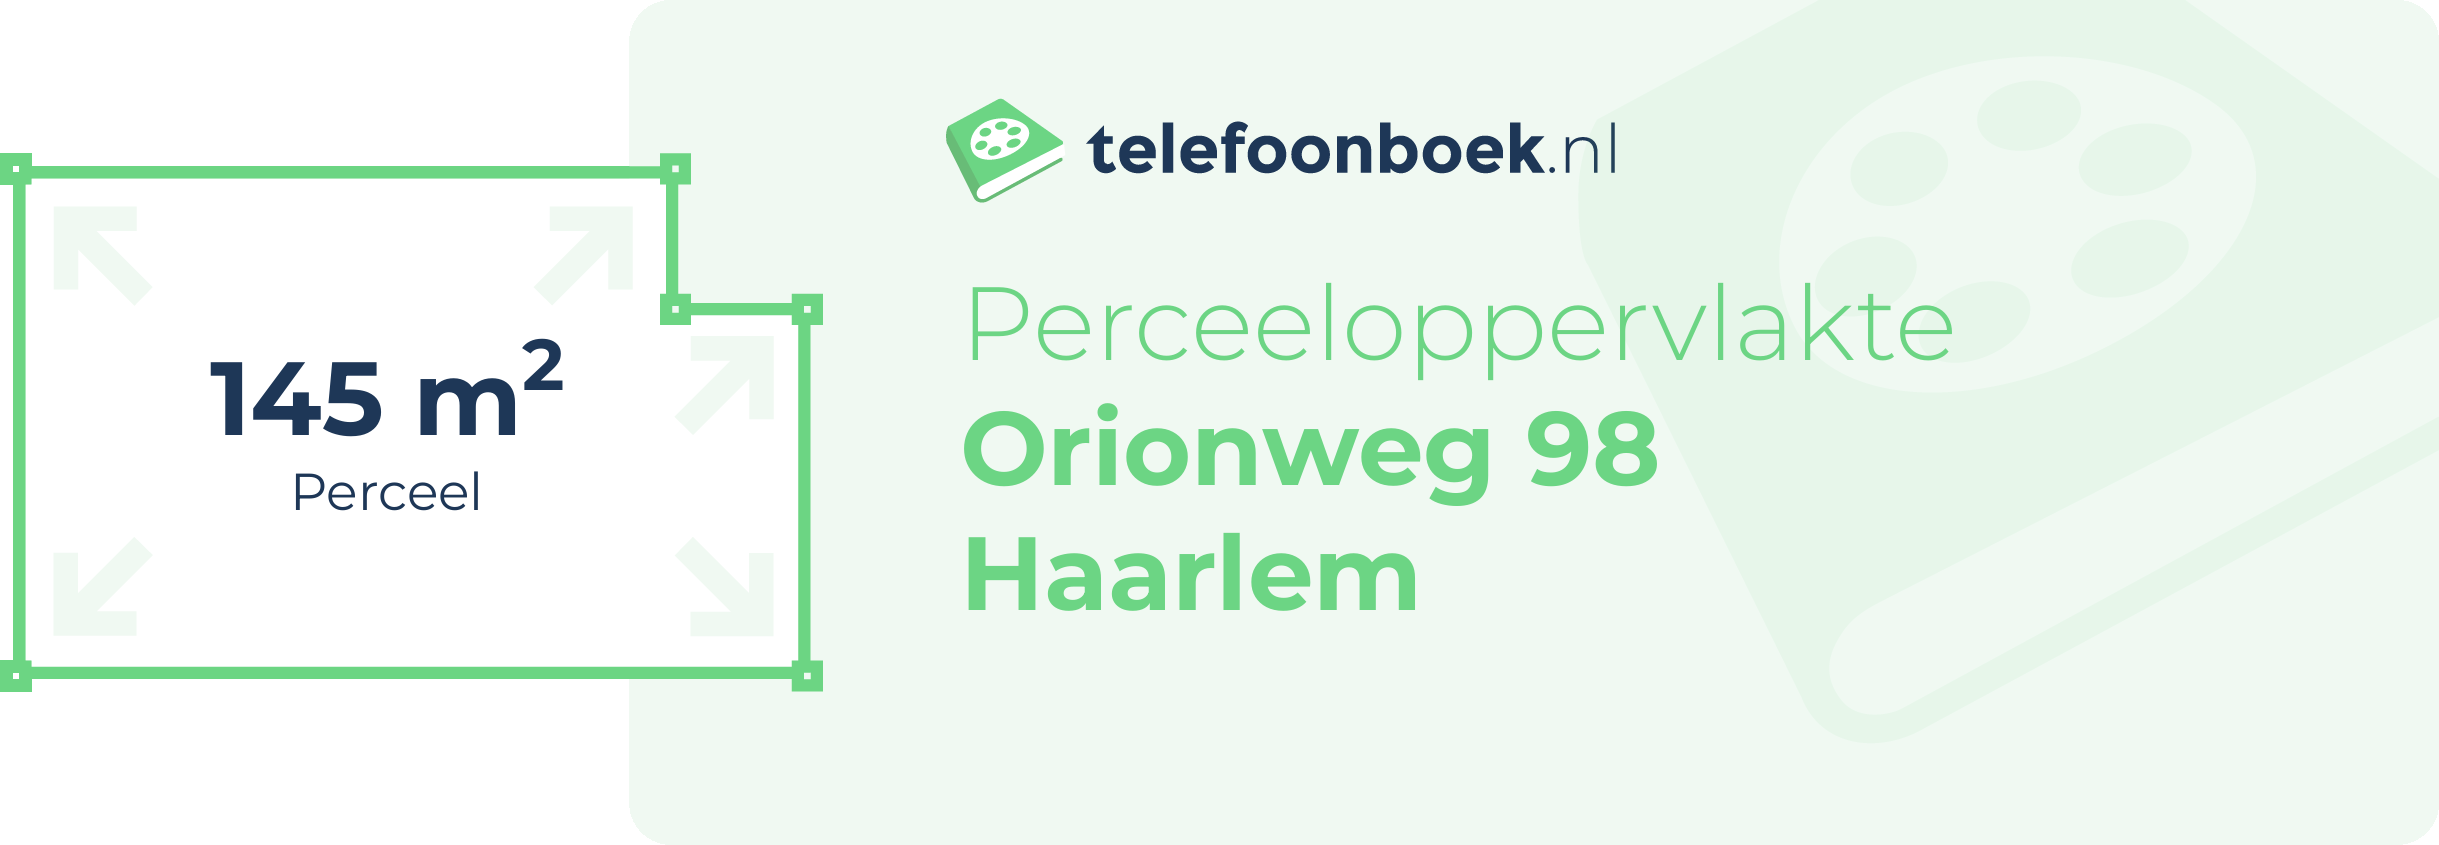 Perceeloppervlakte Orionweg 98 Haarlem